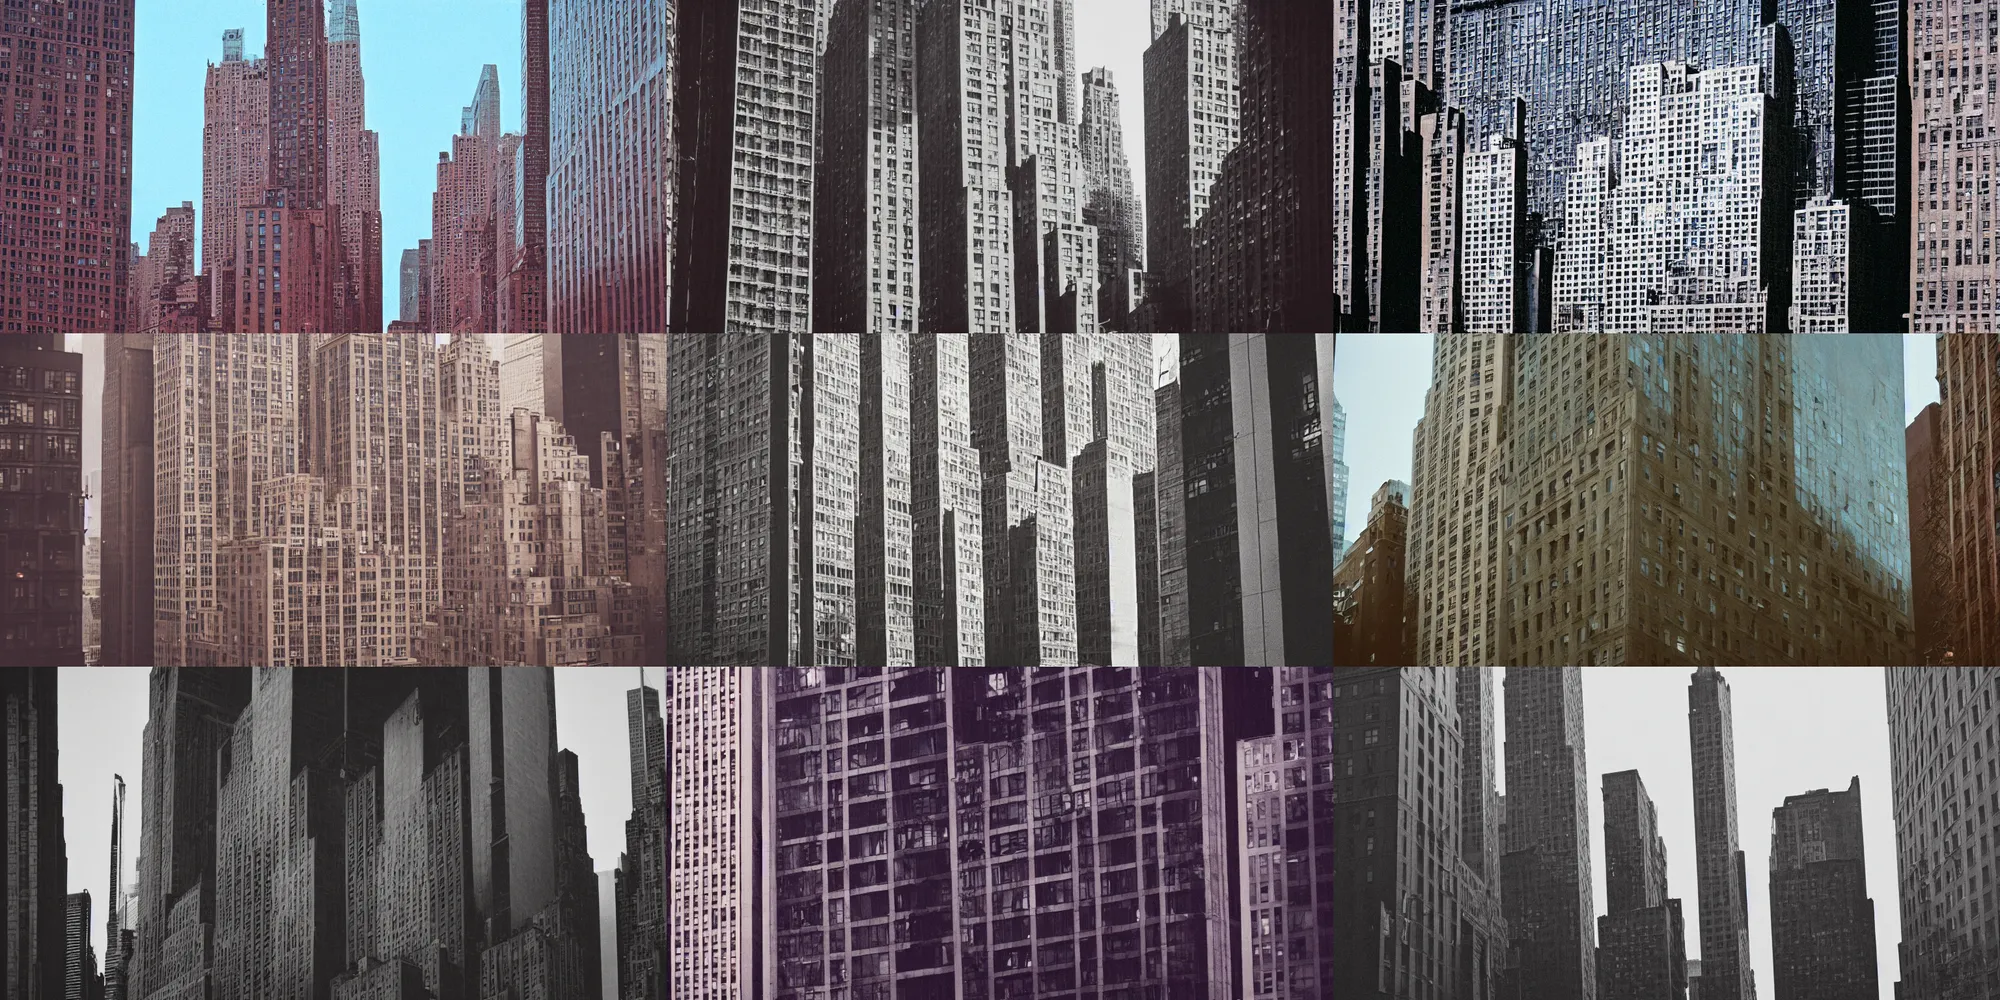 Prompt: new york city buildings made of human skin, cinestill 8 0 0 t, 1 9 8 0 s movie still, film grain